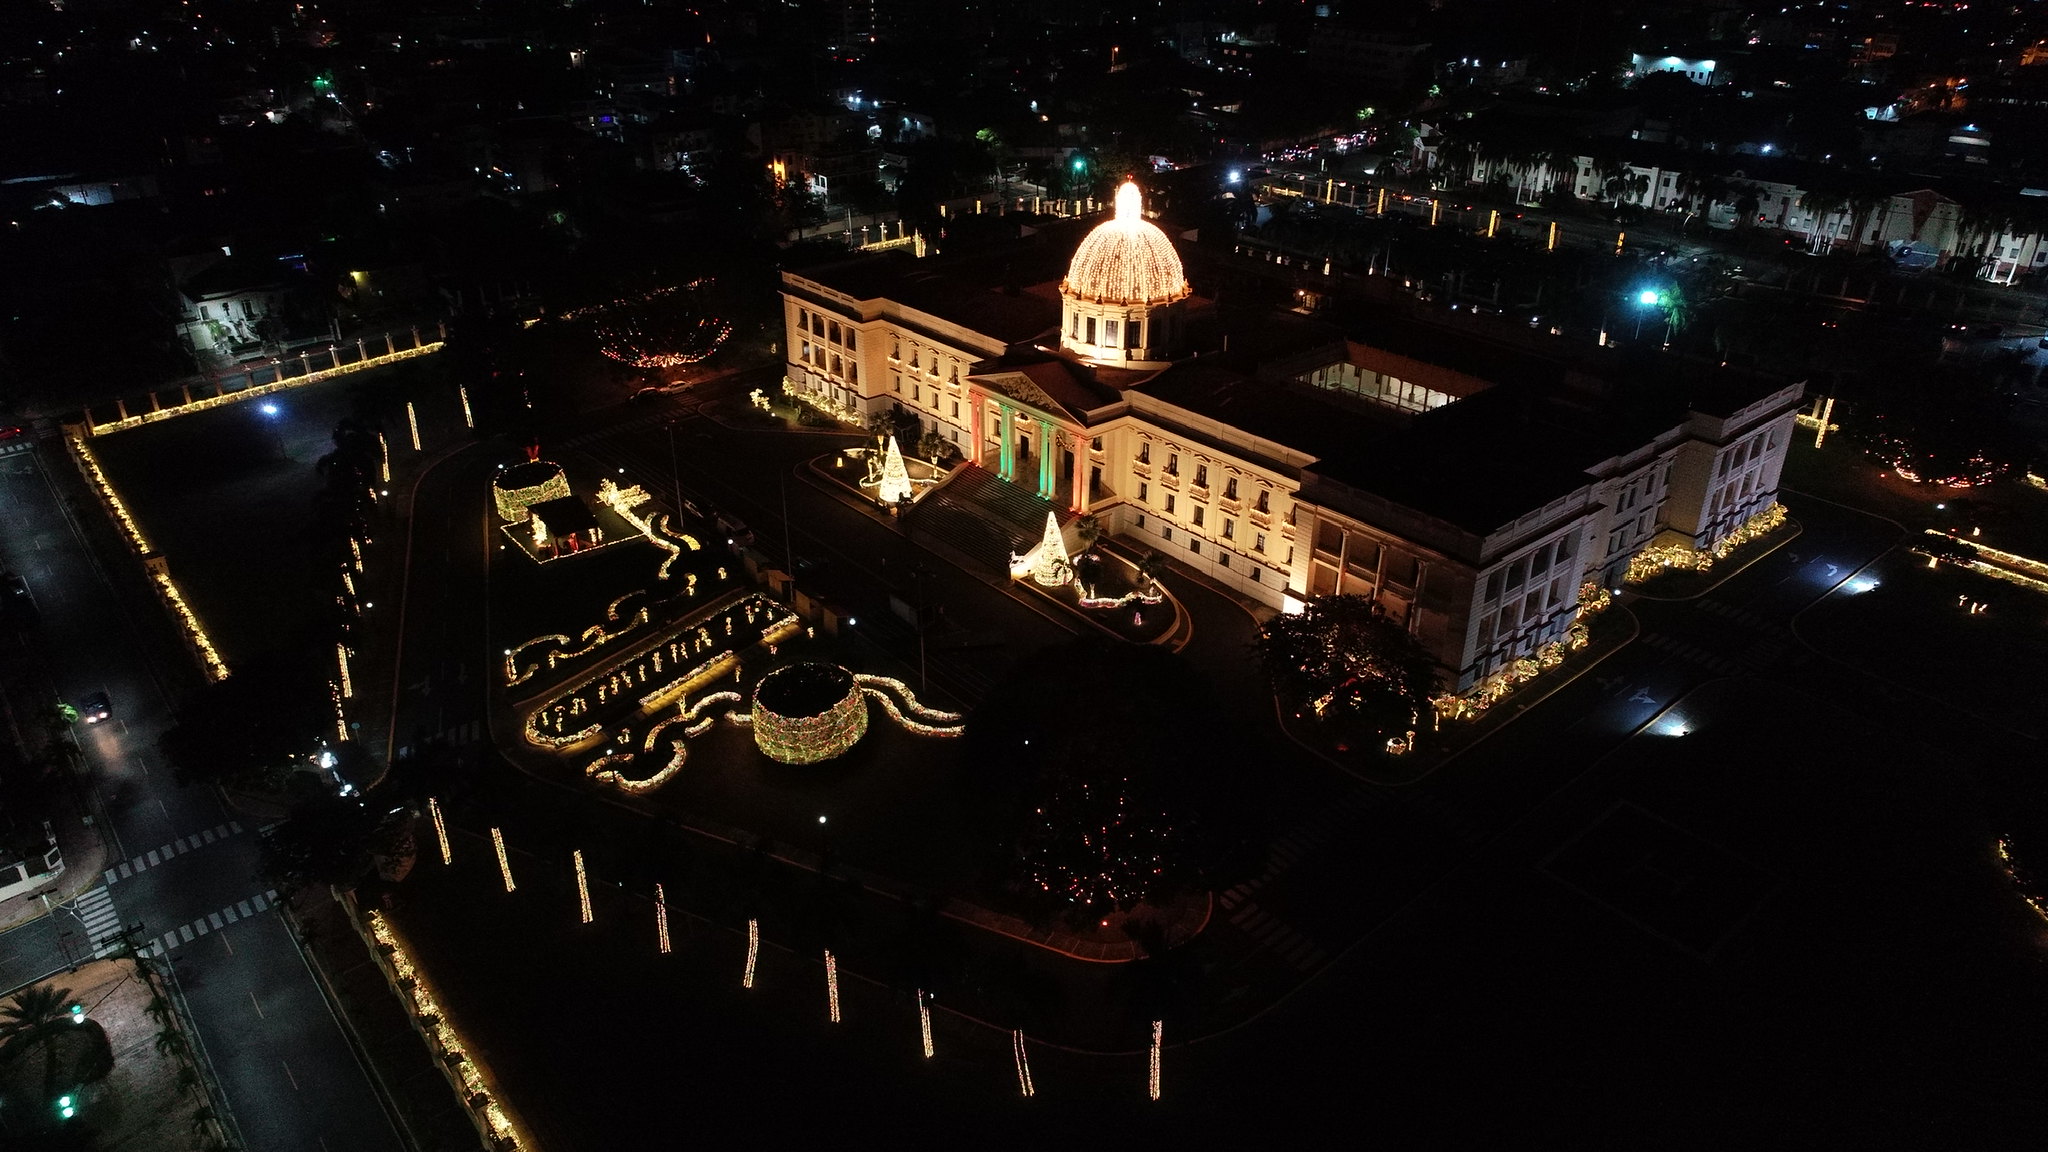 REPÚBLICA DOMINICANA: De jueves a domingo, familias dominicanas podrán disfrutar de su Palacio Nacional decorado especialmente para la Navidad